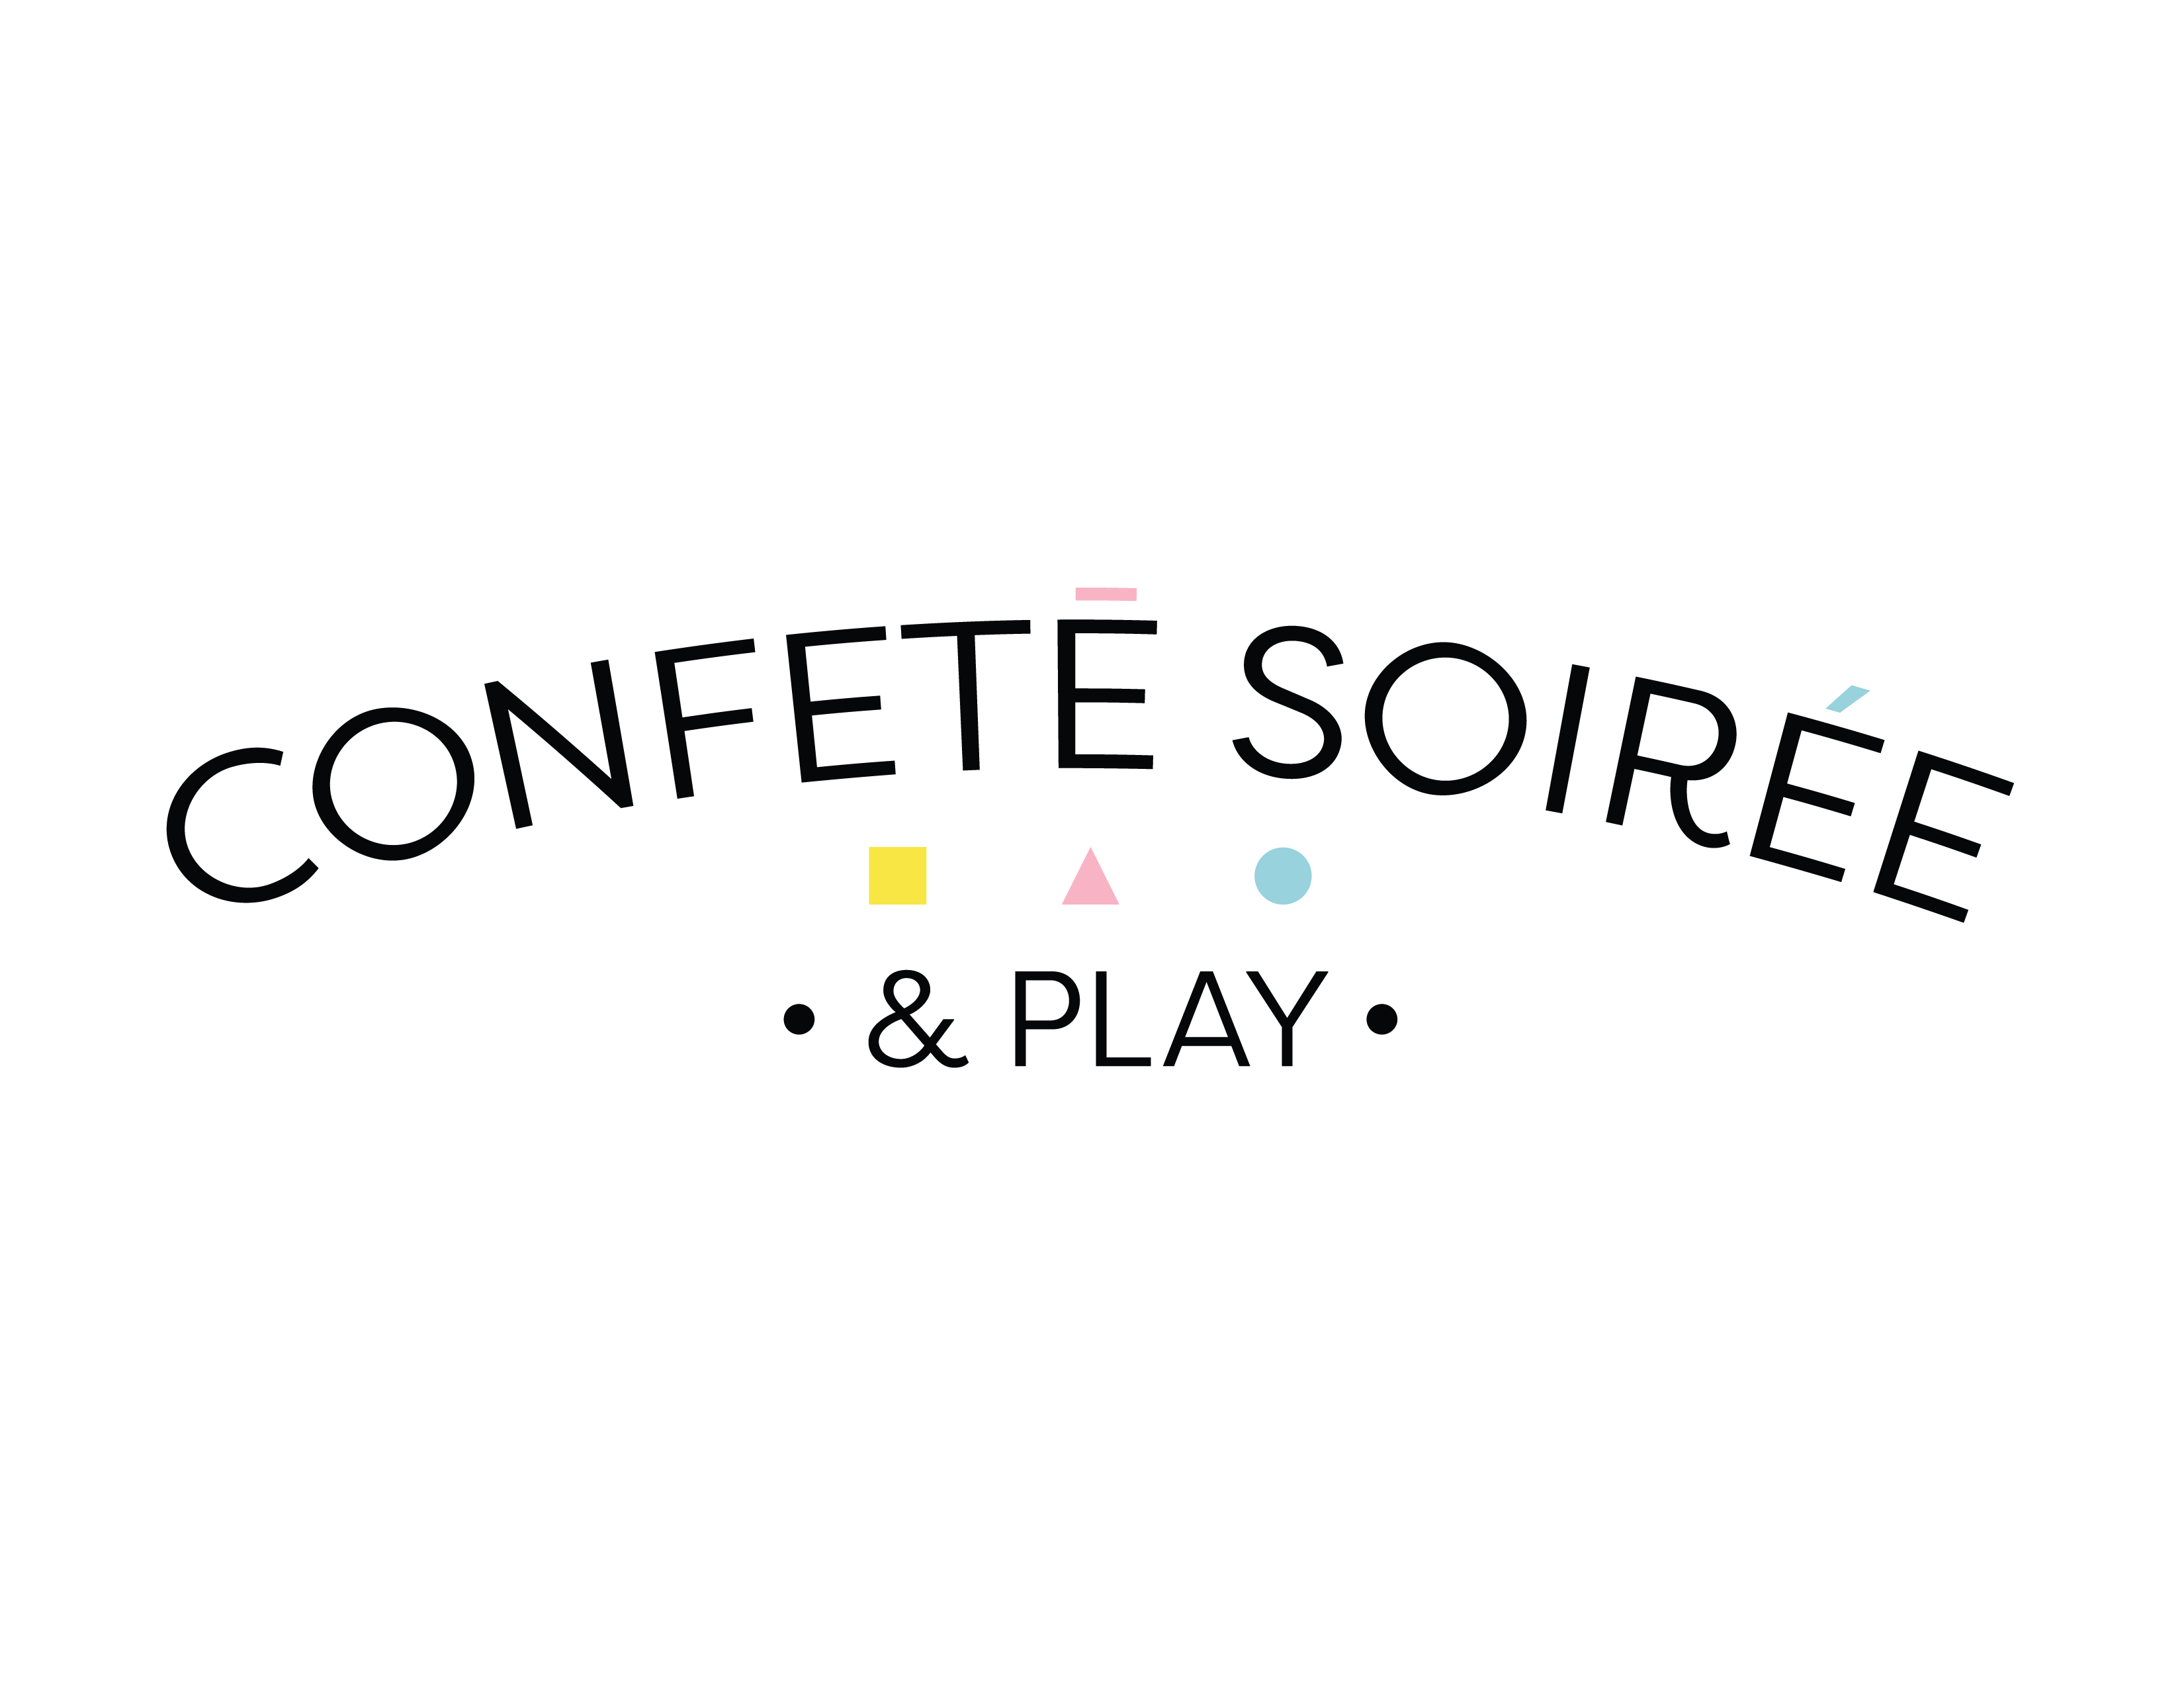 Confete Soiree & Play